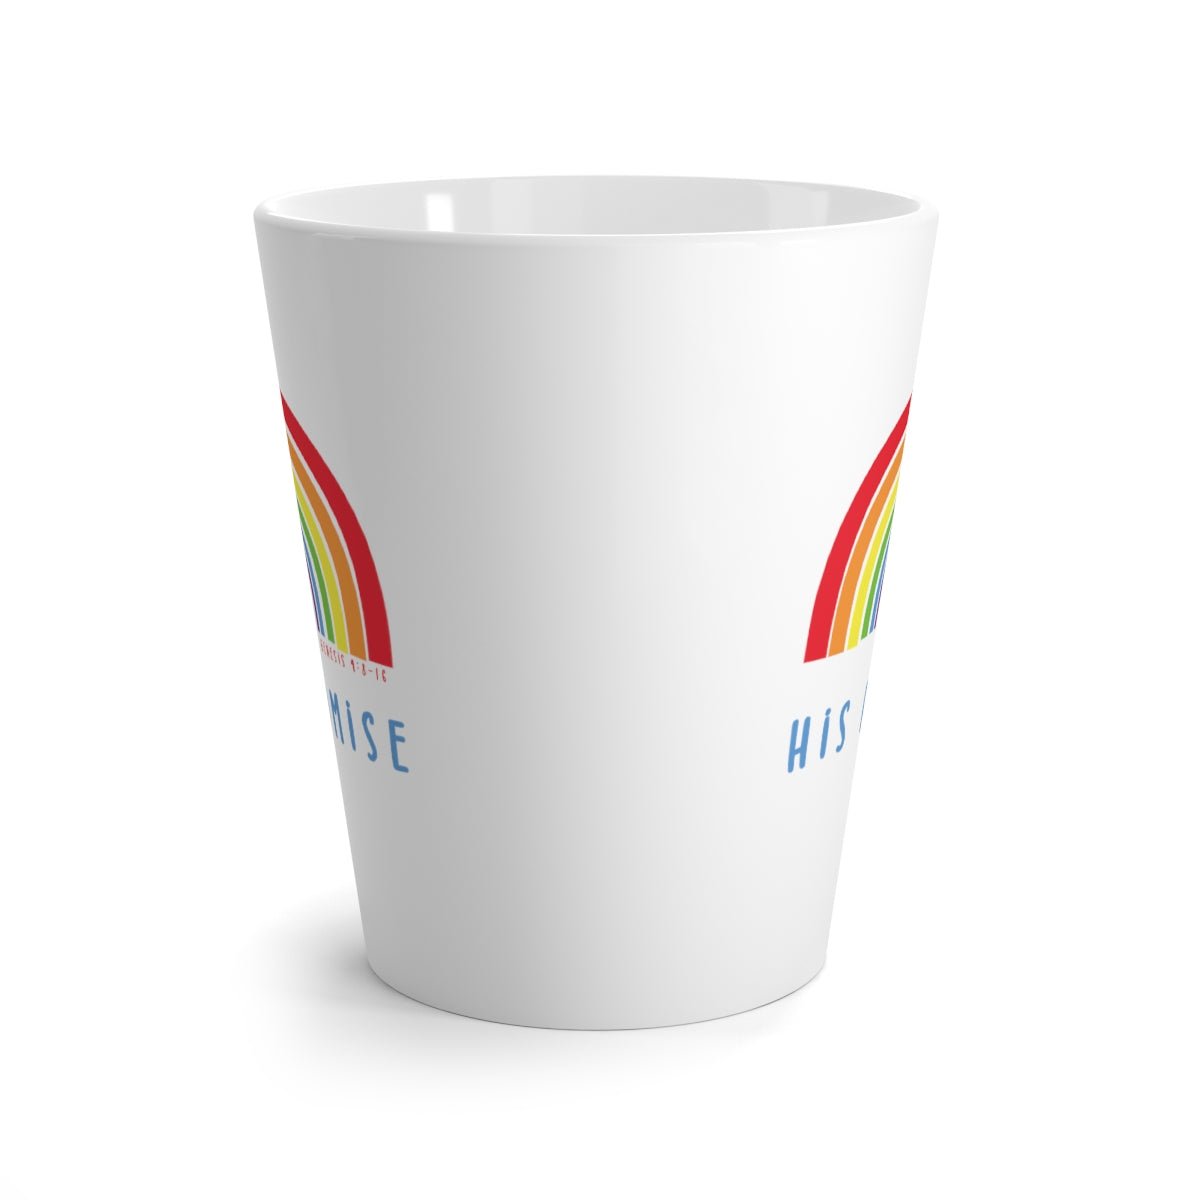 Trini-T - His Promise - Latte Mug 12oz - Trini-T Ministries